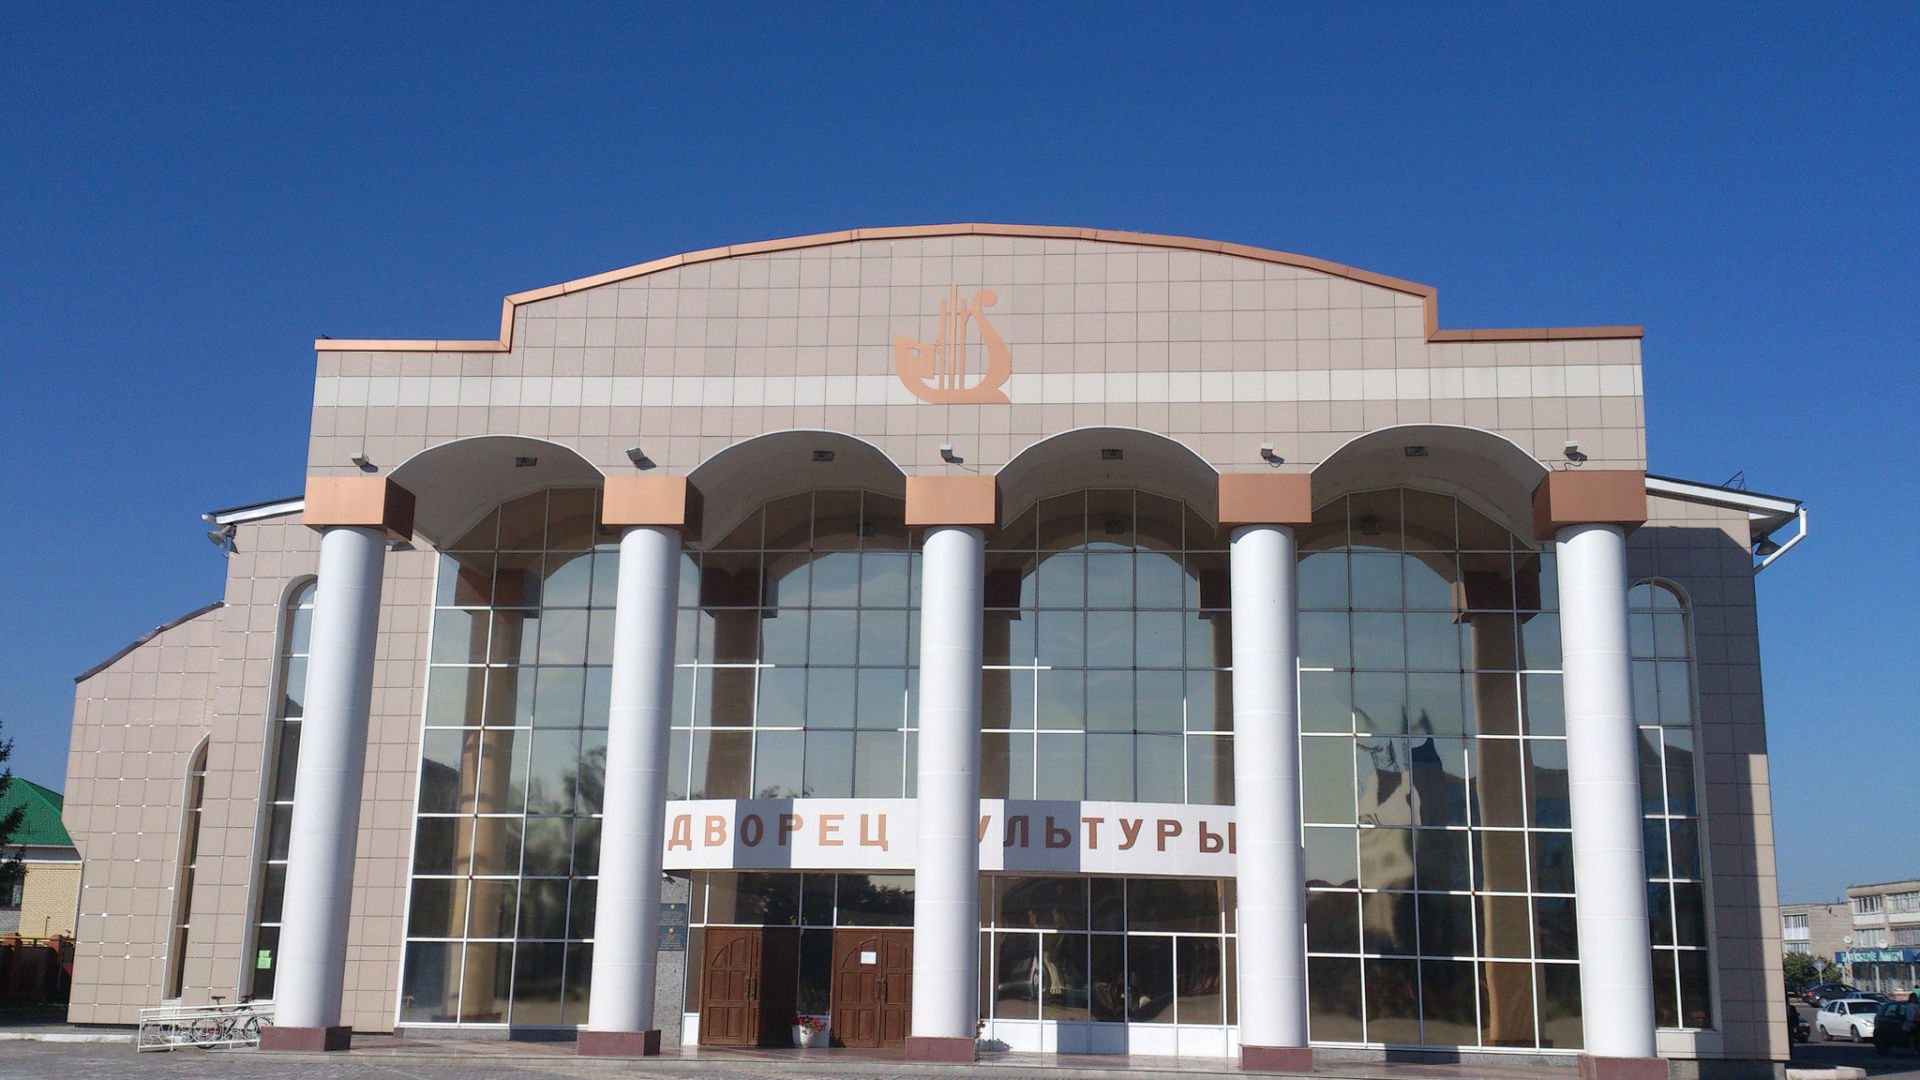 Региональный музей приглашает  27 мая на экскурсию к 100-летию ТАССР